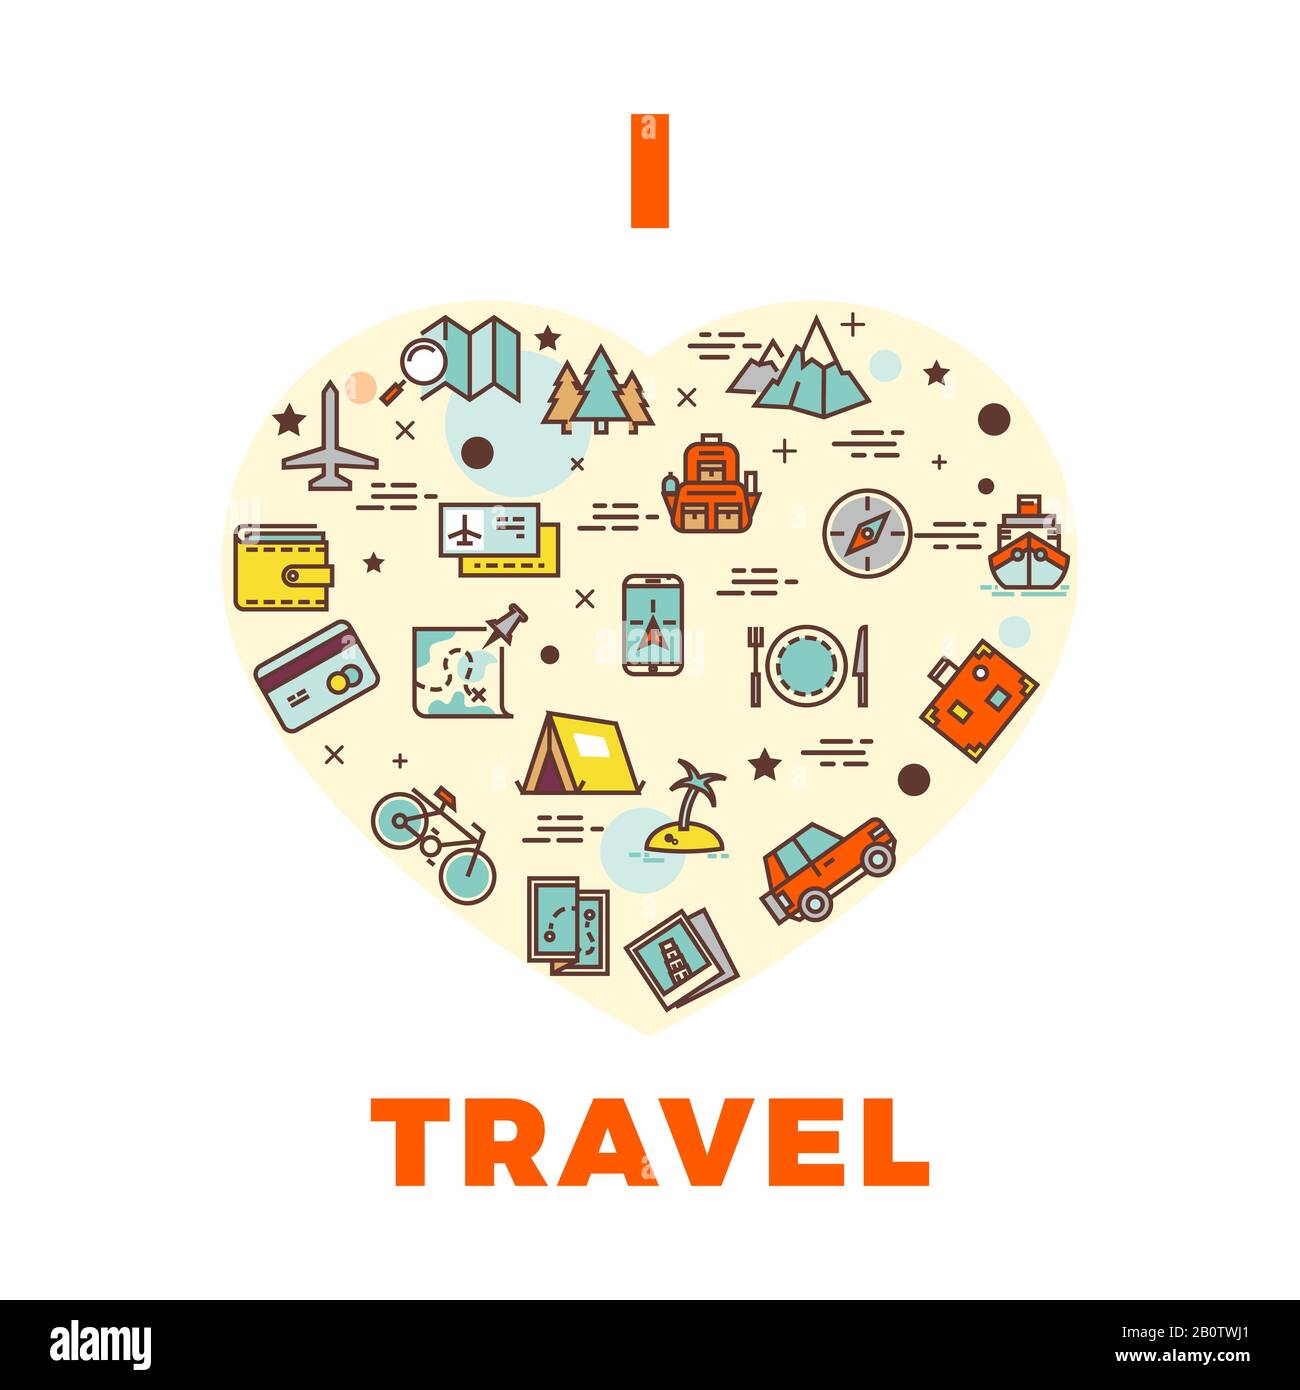 Stampa o poster di viaggio - amo il design di viaggio con il cuore dalle icone di viaggio. Illustrazione del simbolo del turismo e delle vacanze Illustrazione Vettoriale